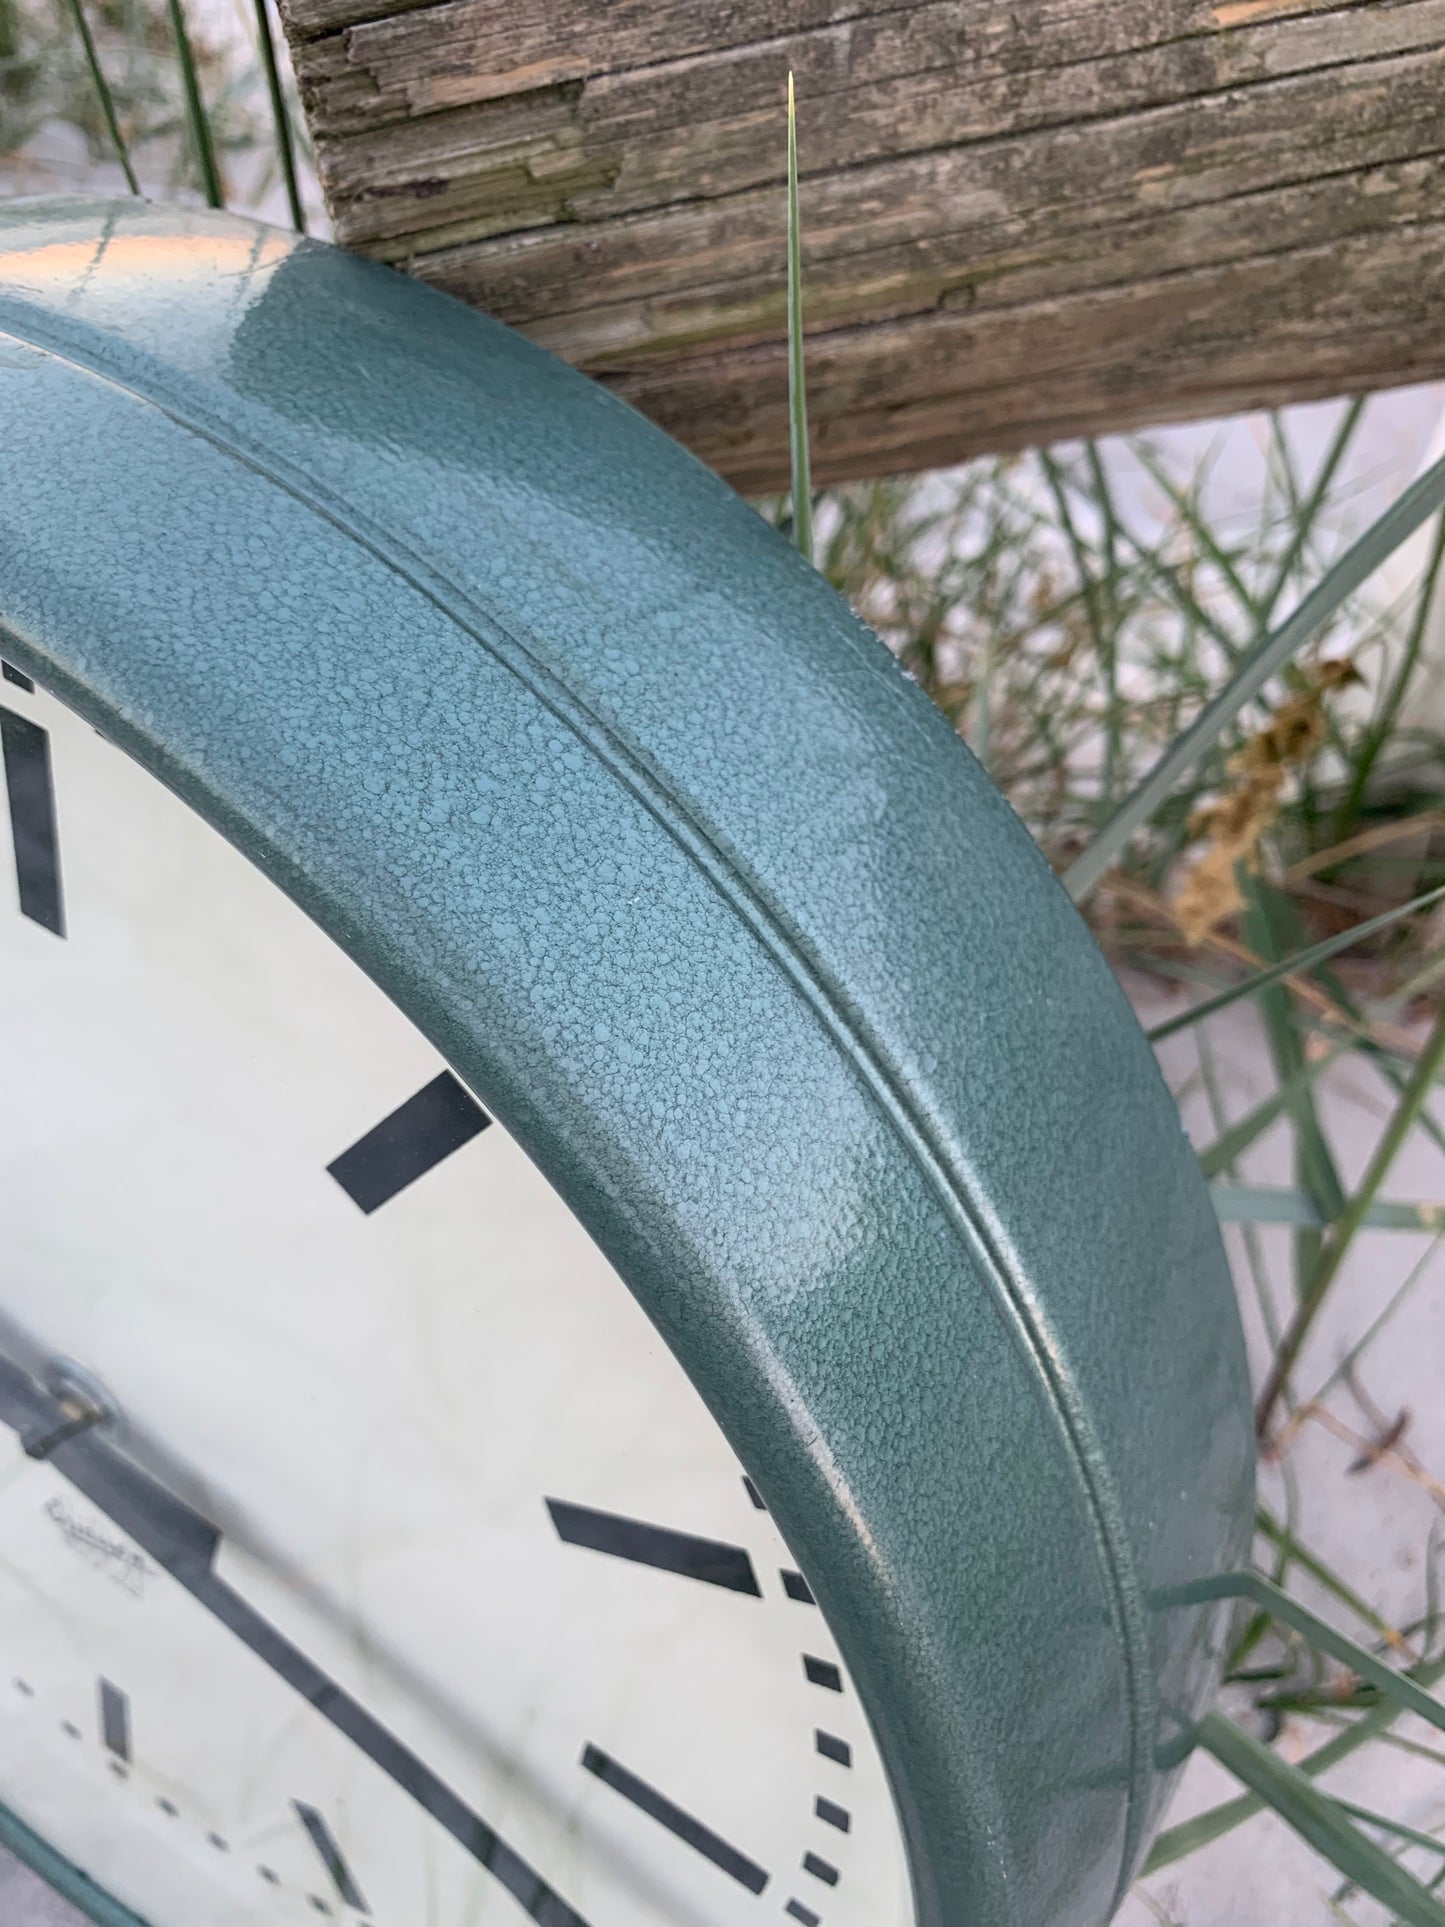 Schöne Uhr in grünem Hammerschlaglack